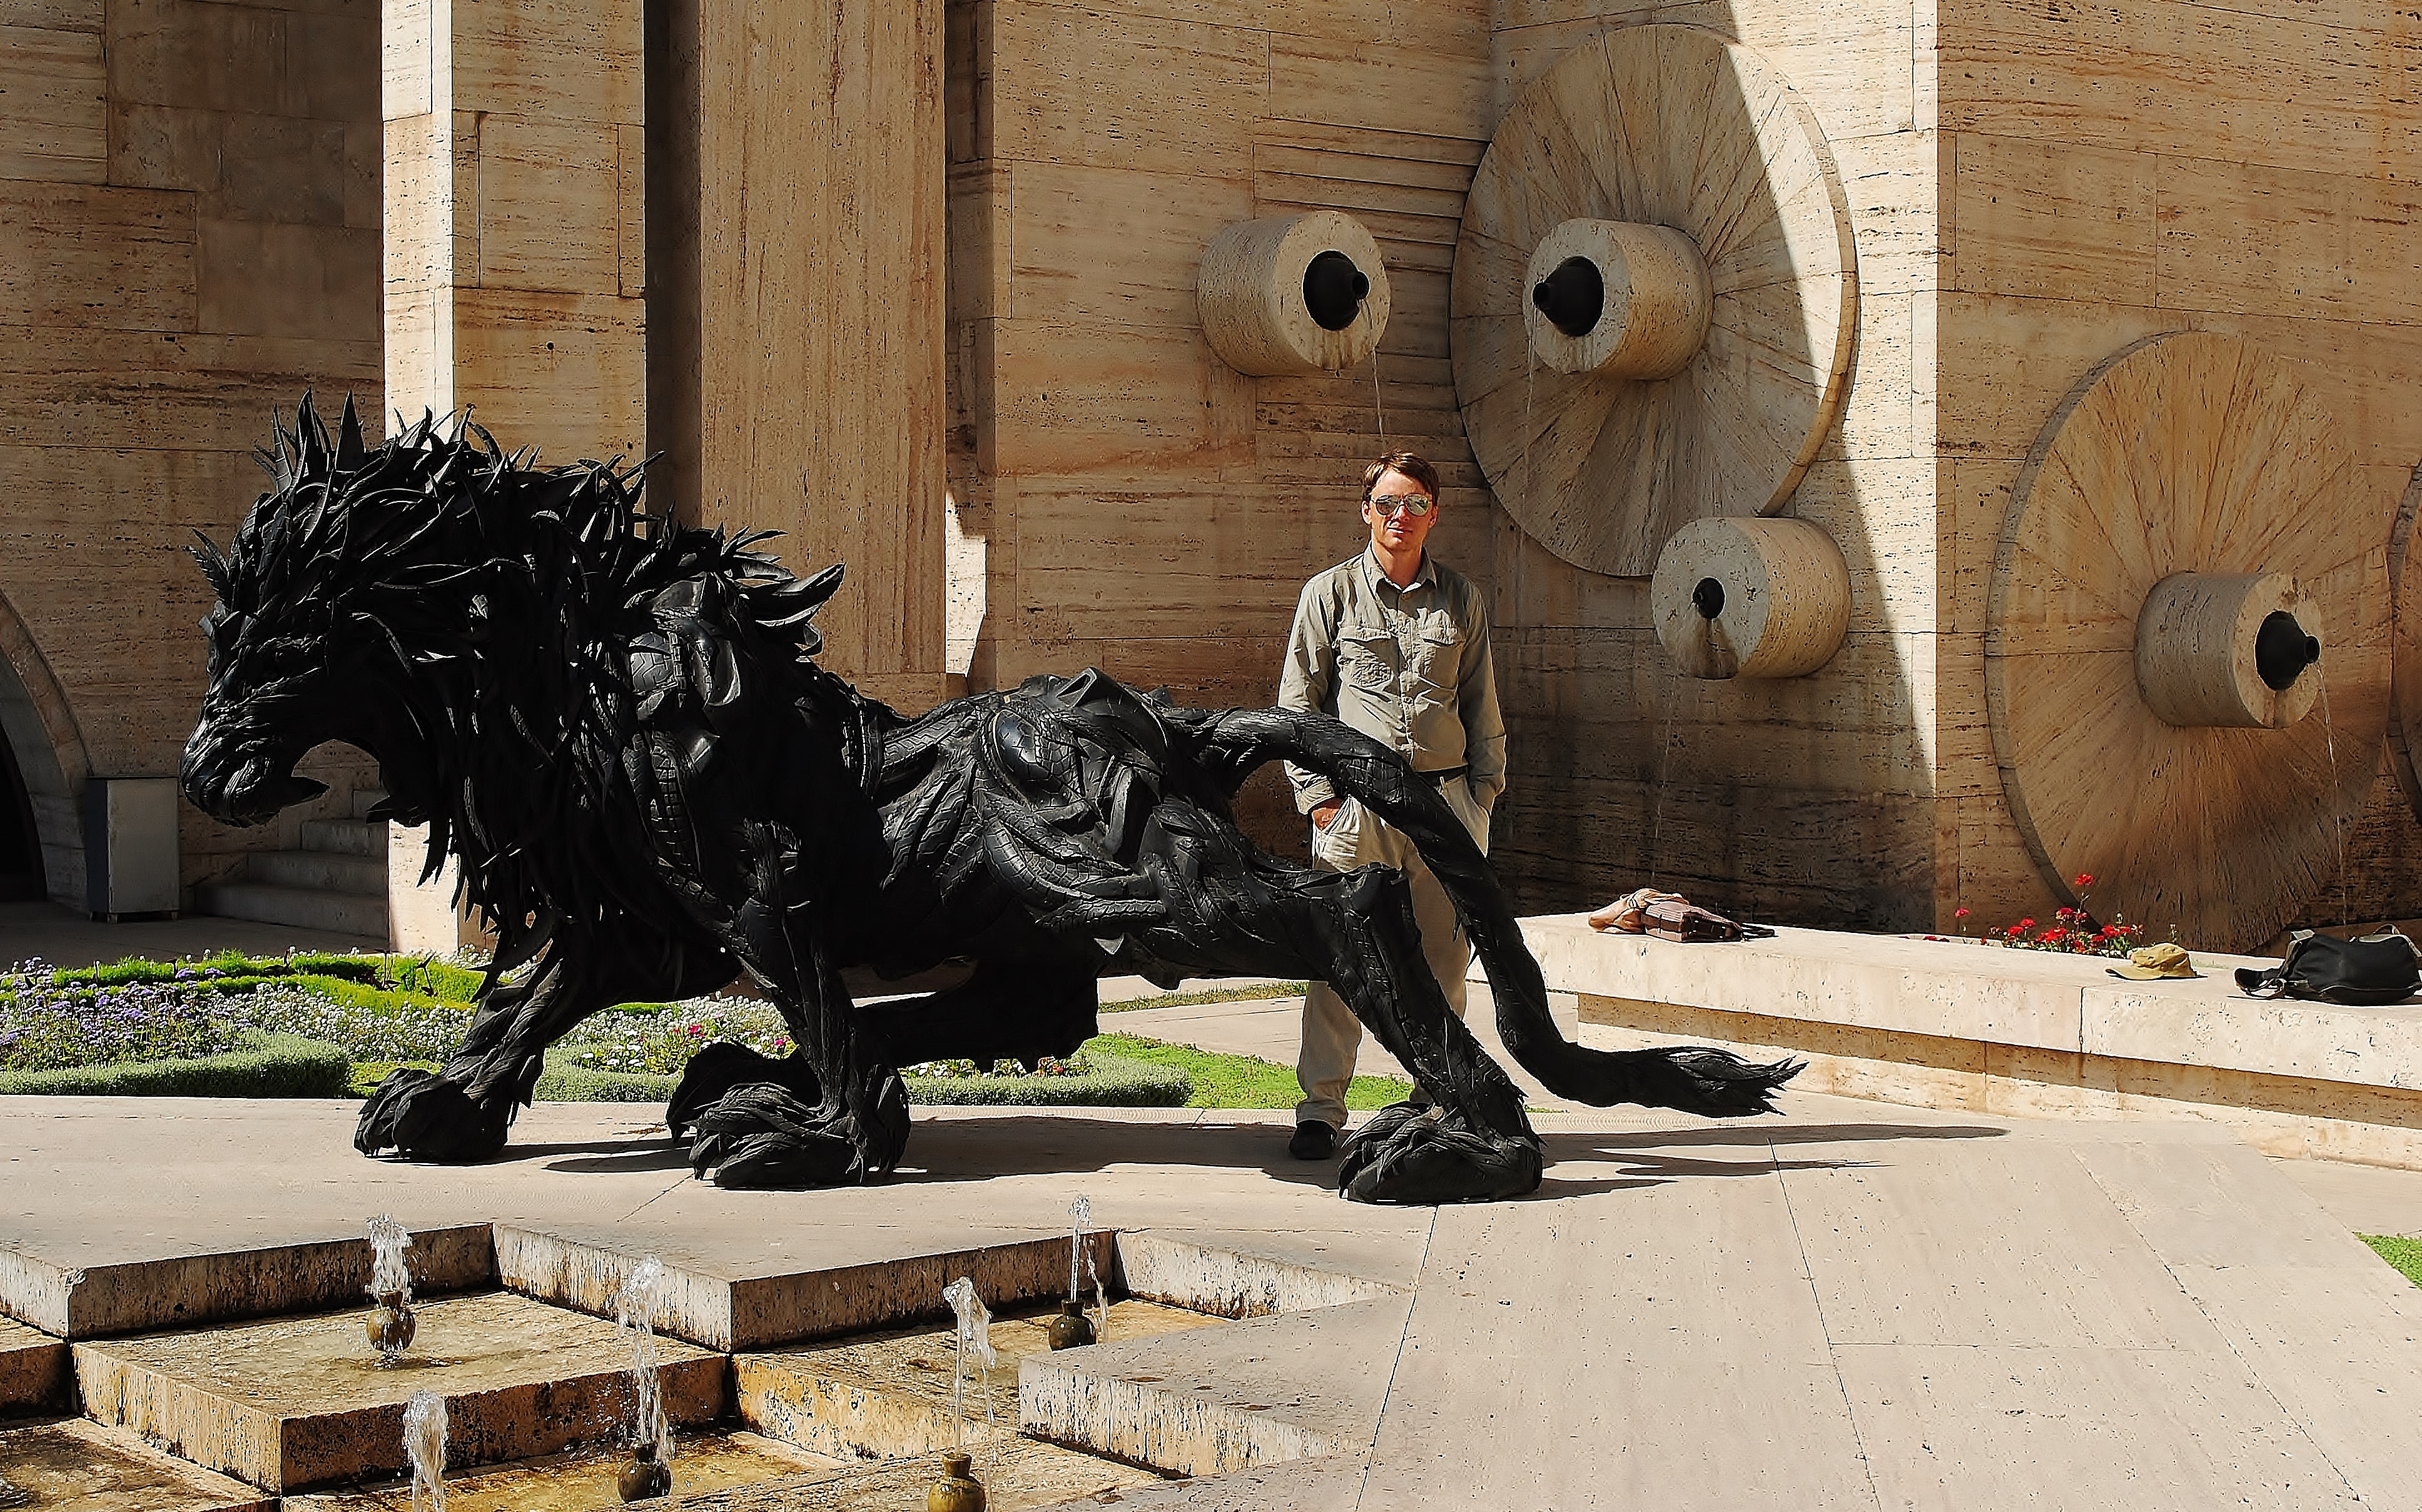 Armenia; Erywań - na Kaskadzie przy figurze lwa wykonanej z opon.